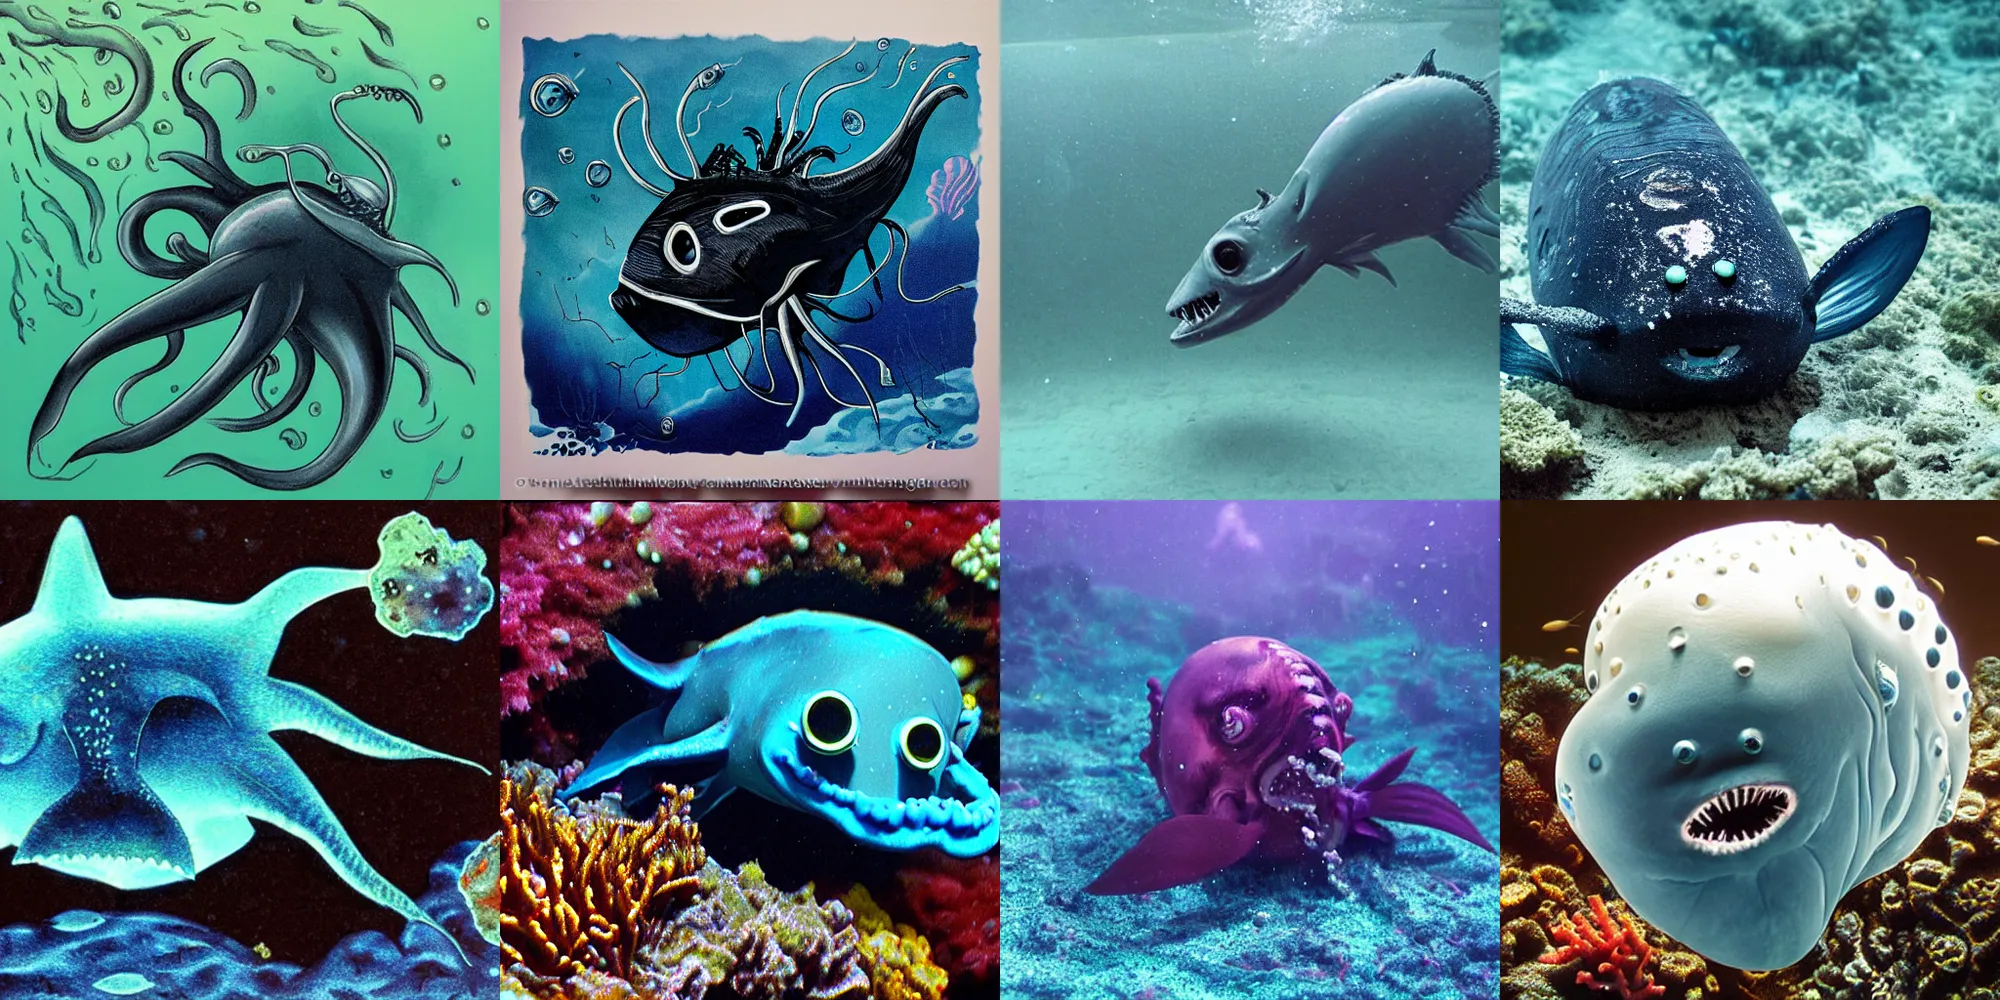 Prompt: deep sea creature